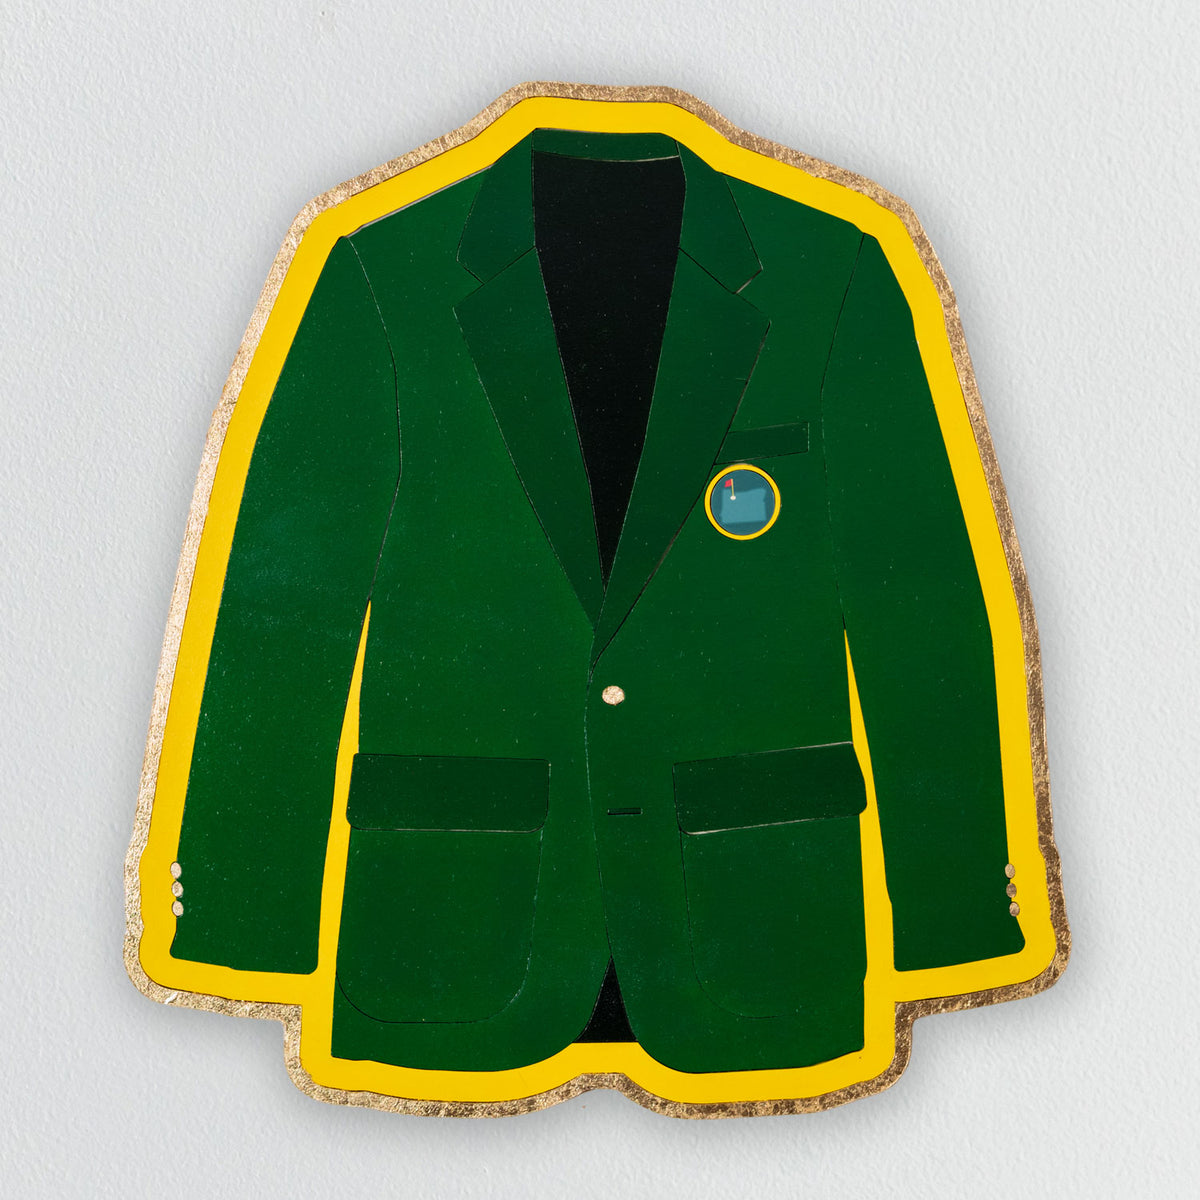 Green Jacket Golf Wall Art